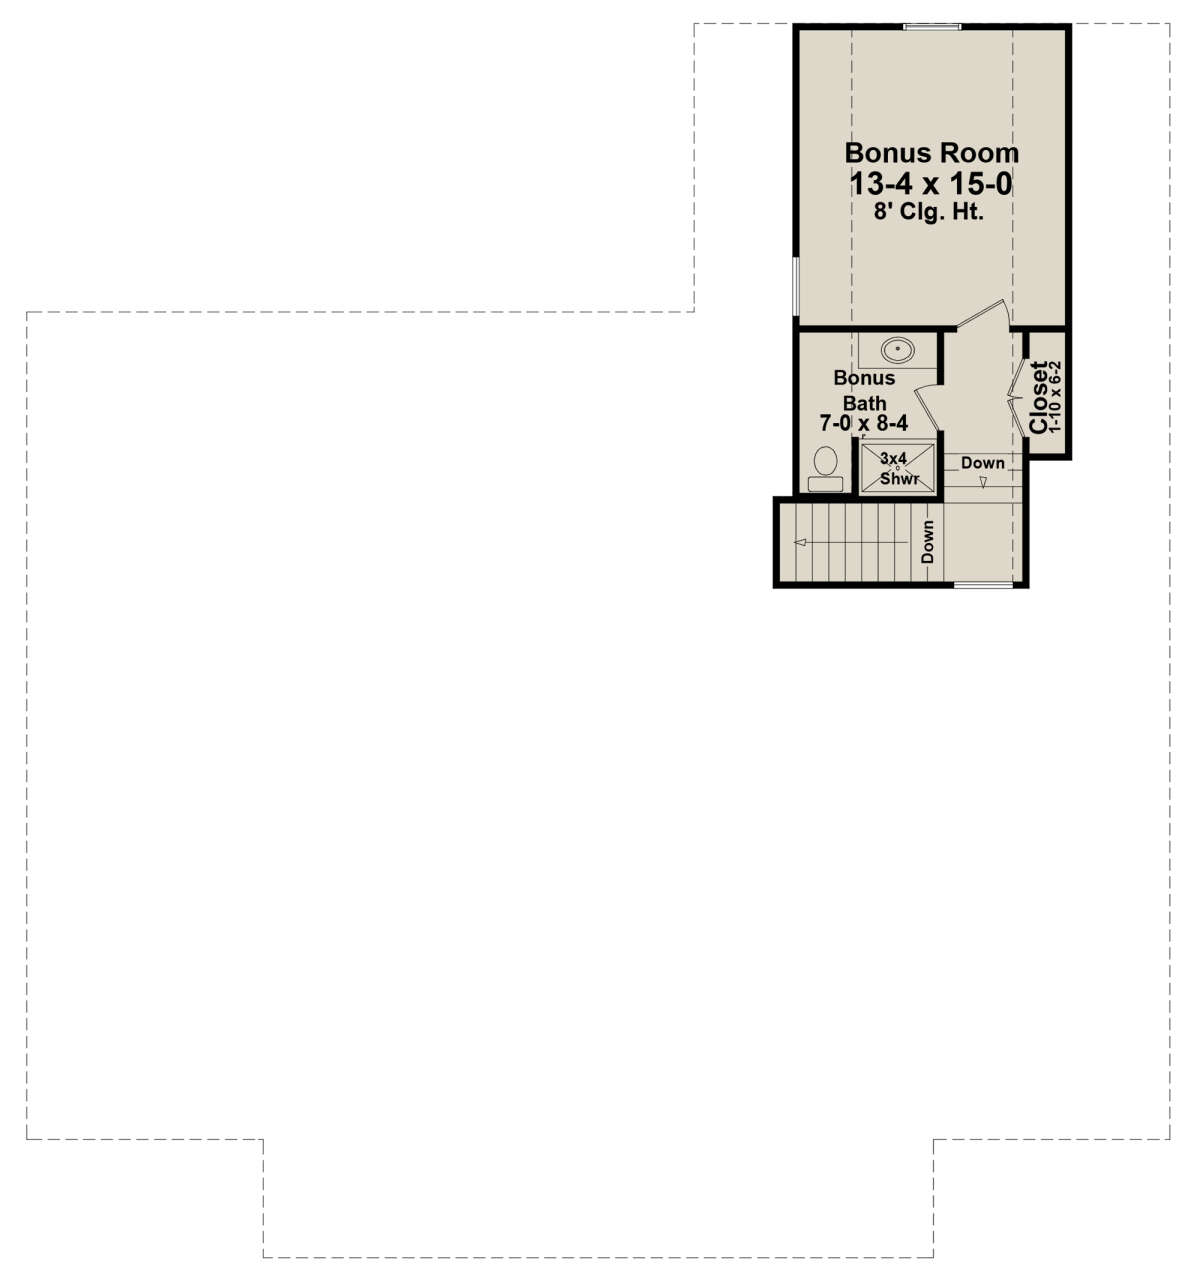 Bonus Room for House Plan #348-00292